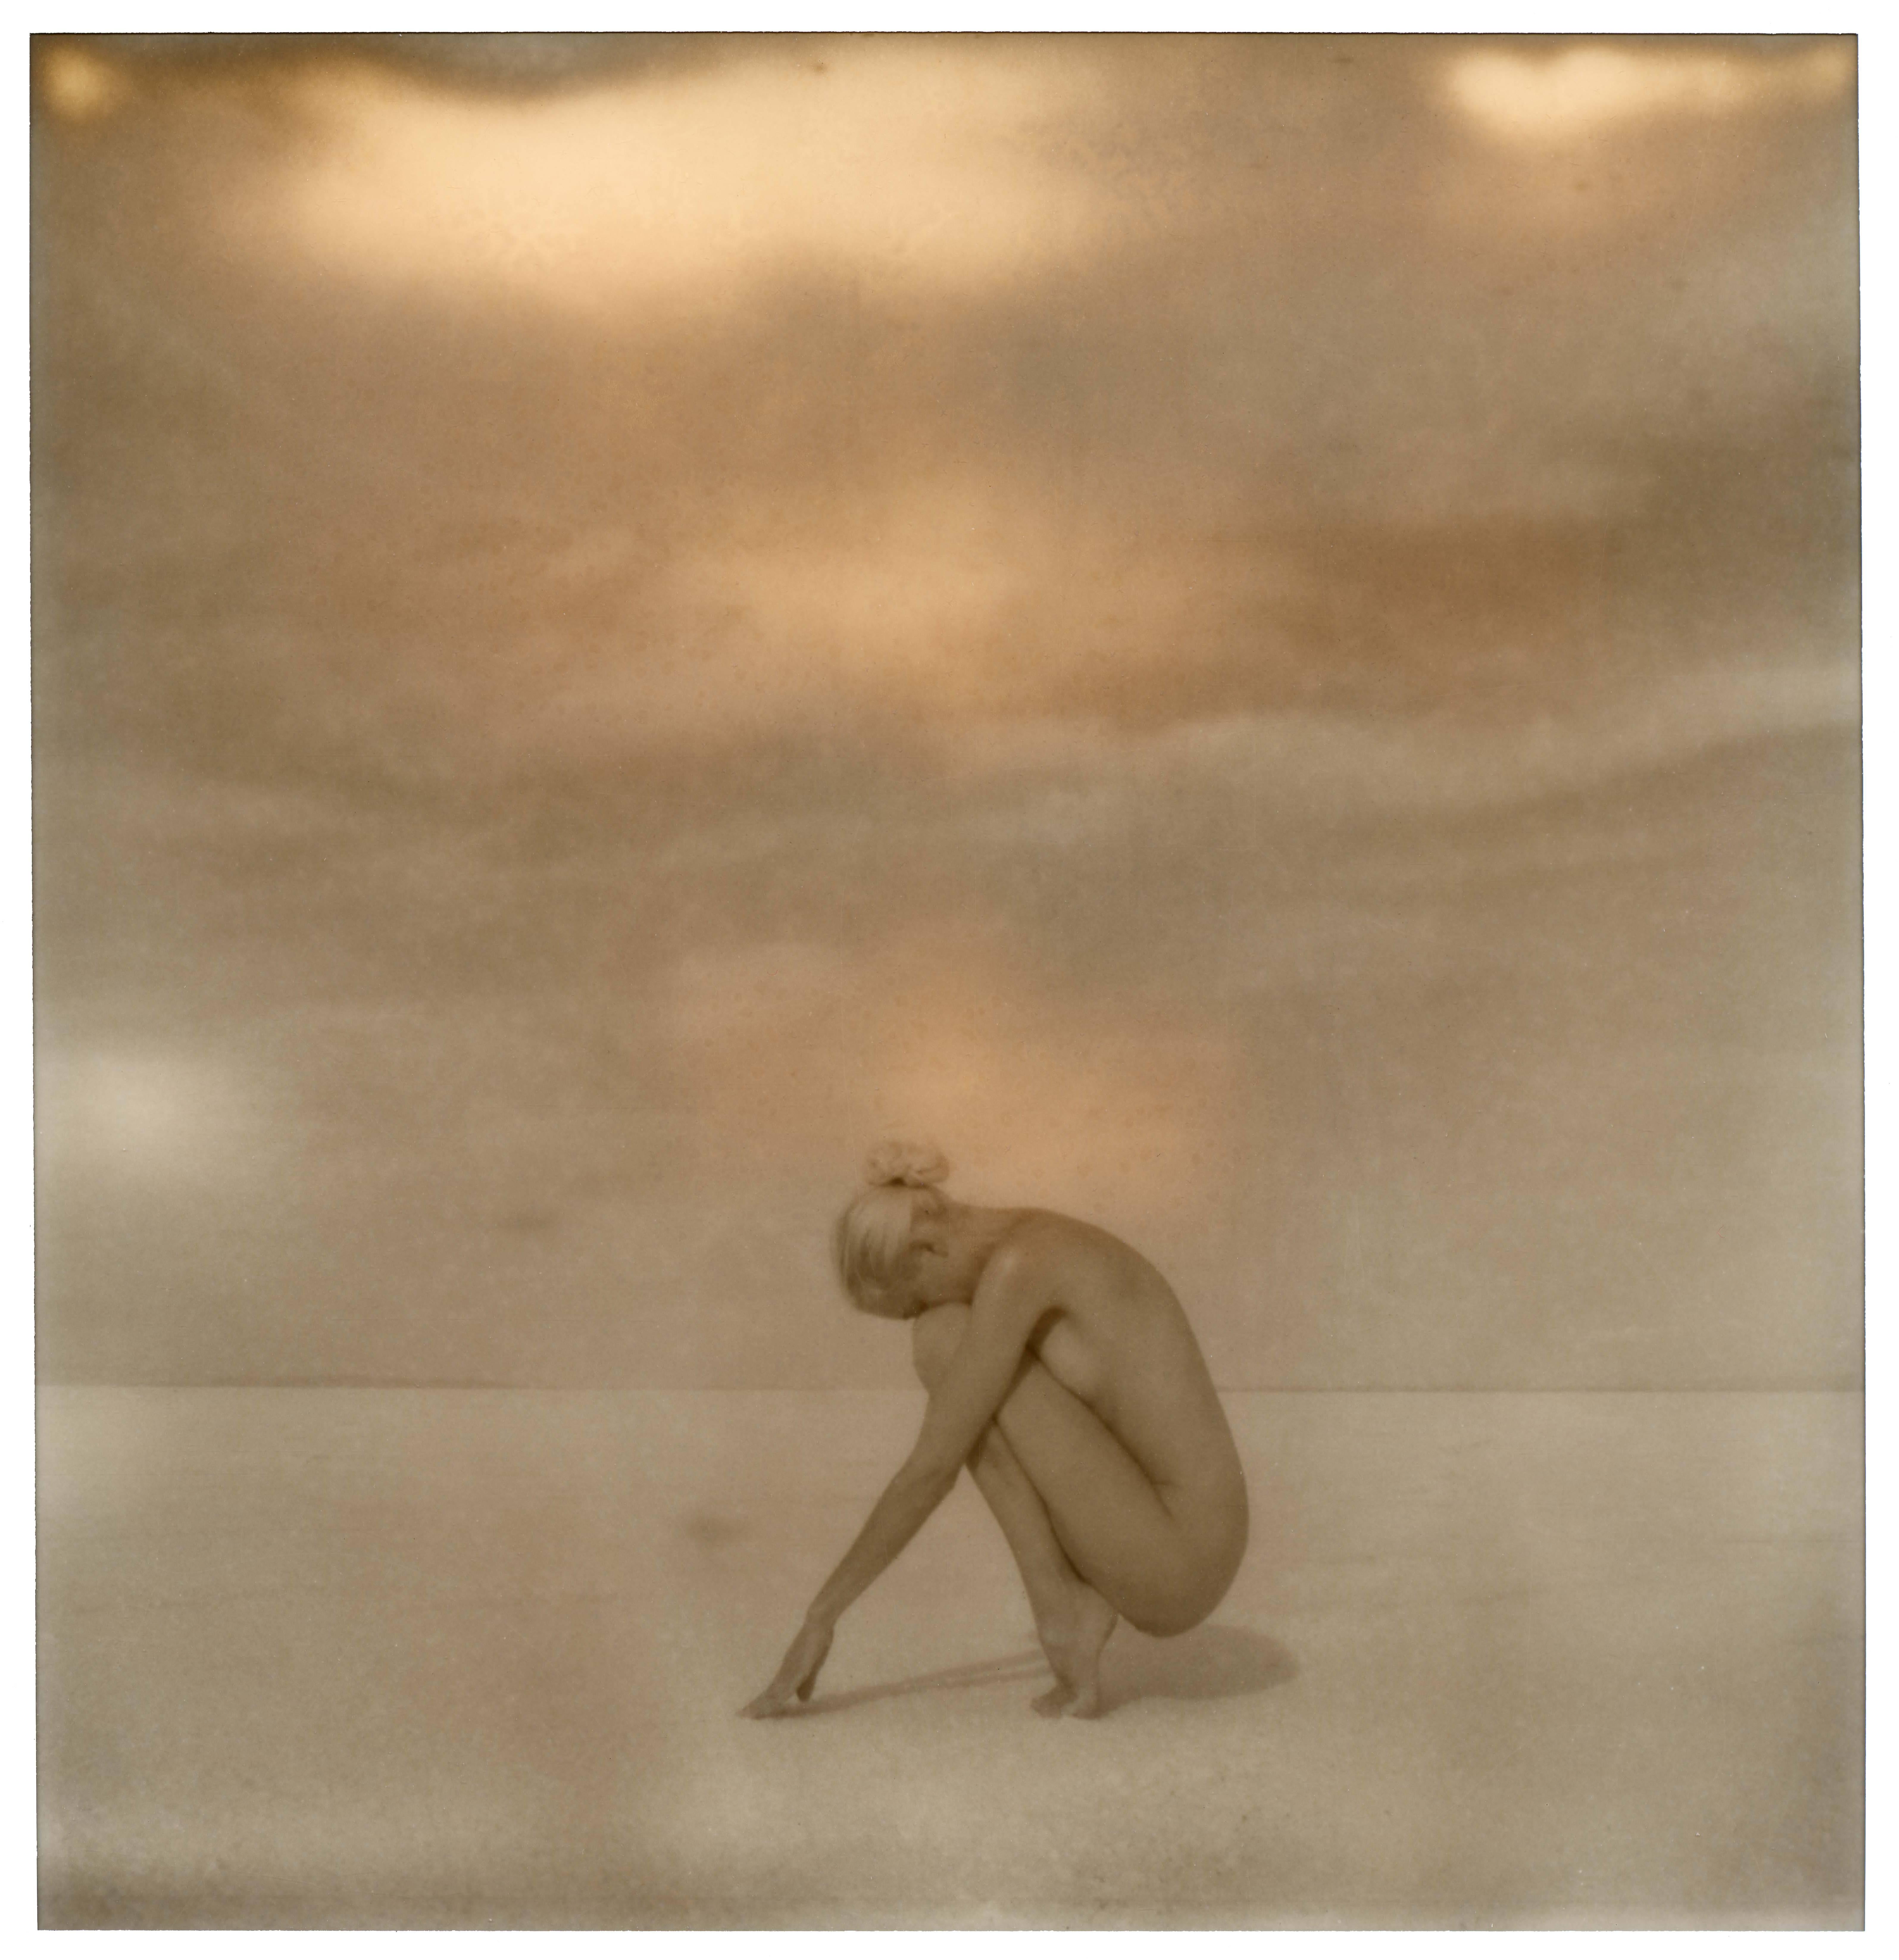 Kirsten Thys van den Audenaerde Landscape Photograph - Salt on my Skin - 80x80cm - Polaroid, Contemporary, 21st Century